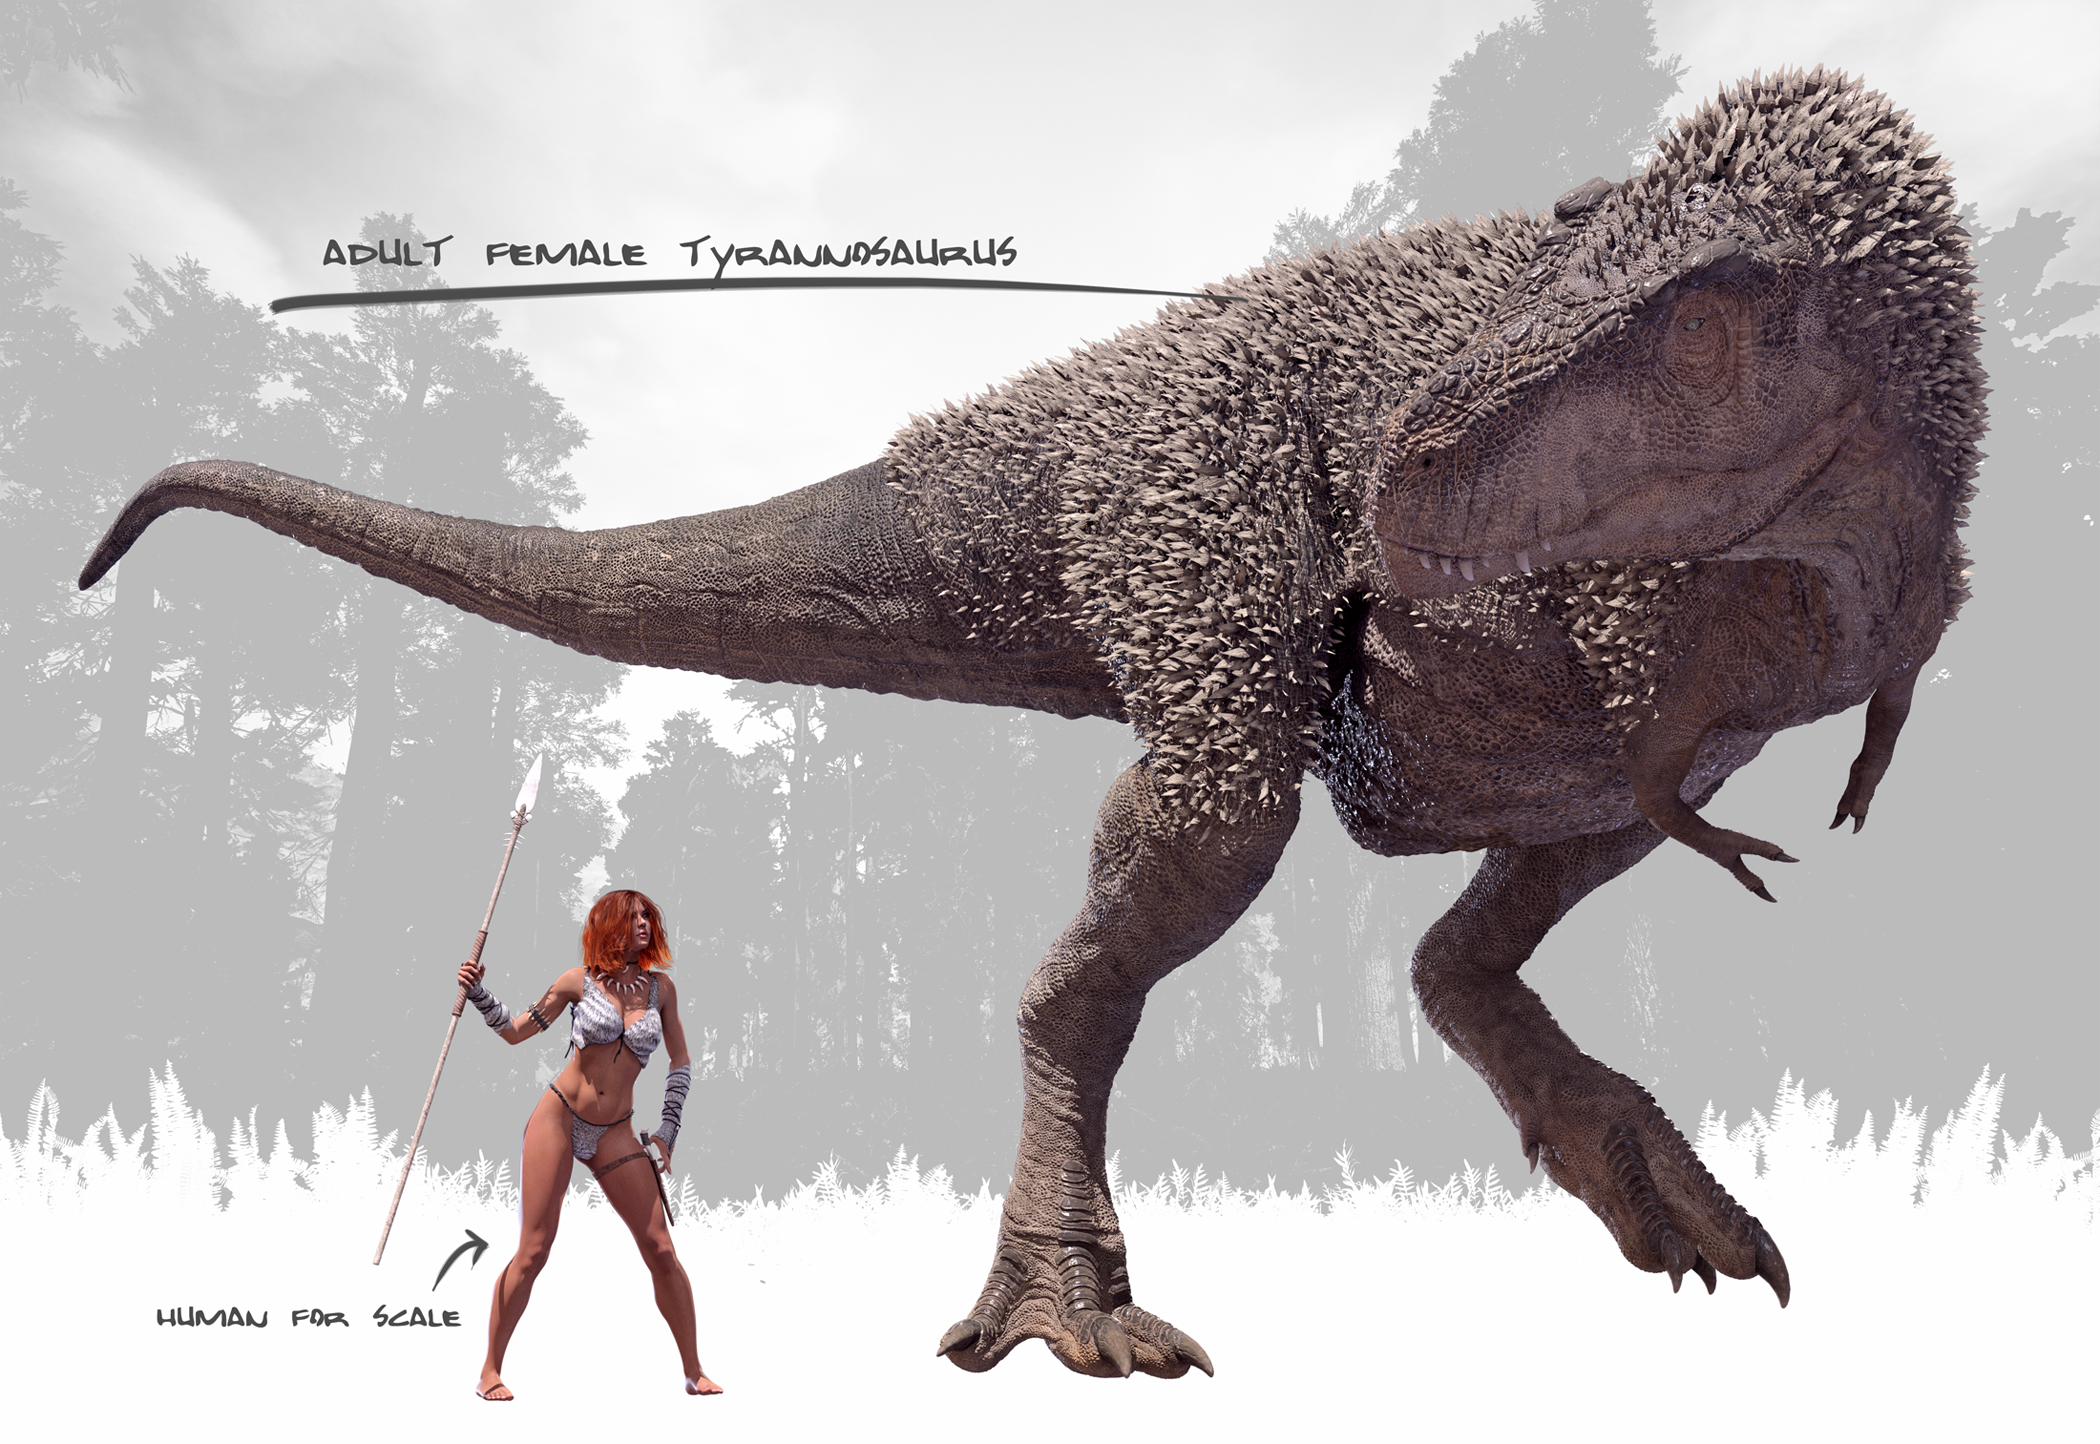 Female Tyrannosaurus Rex by Herschel-Hoffmeyer on DeviantArt